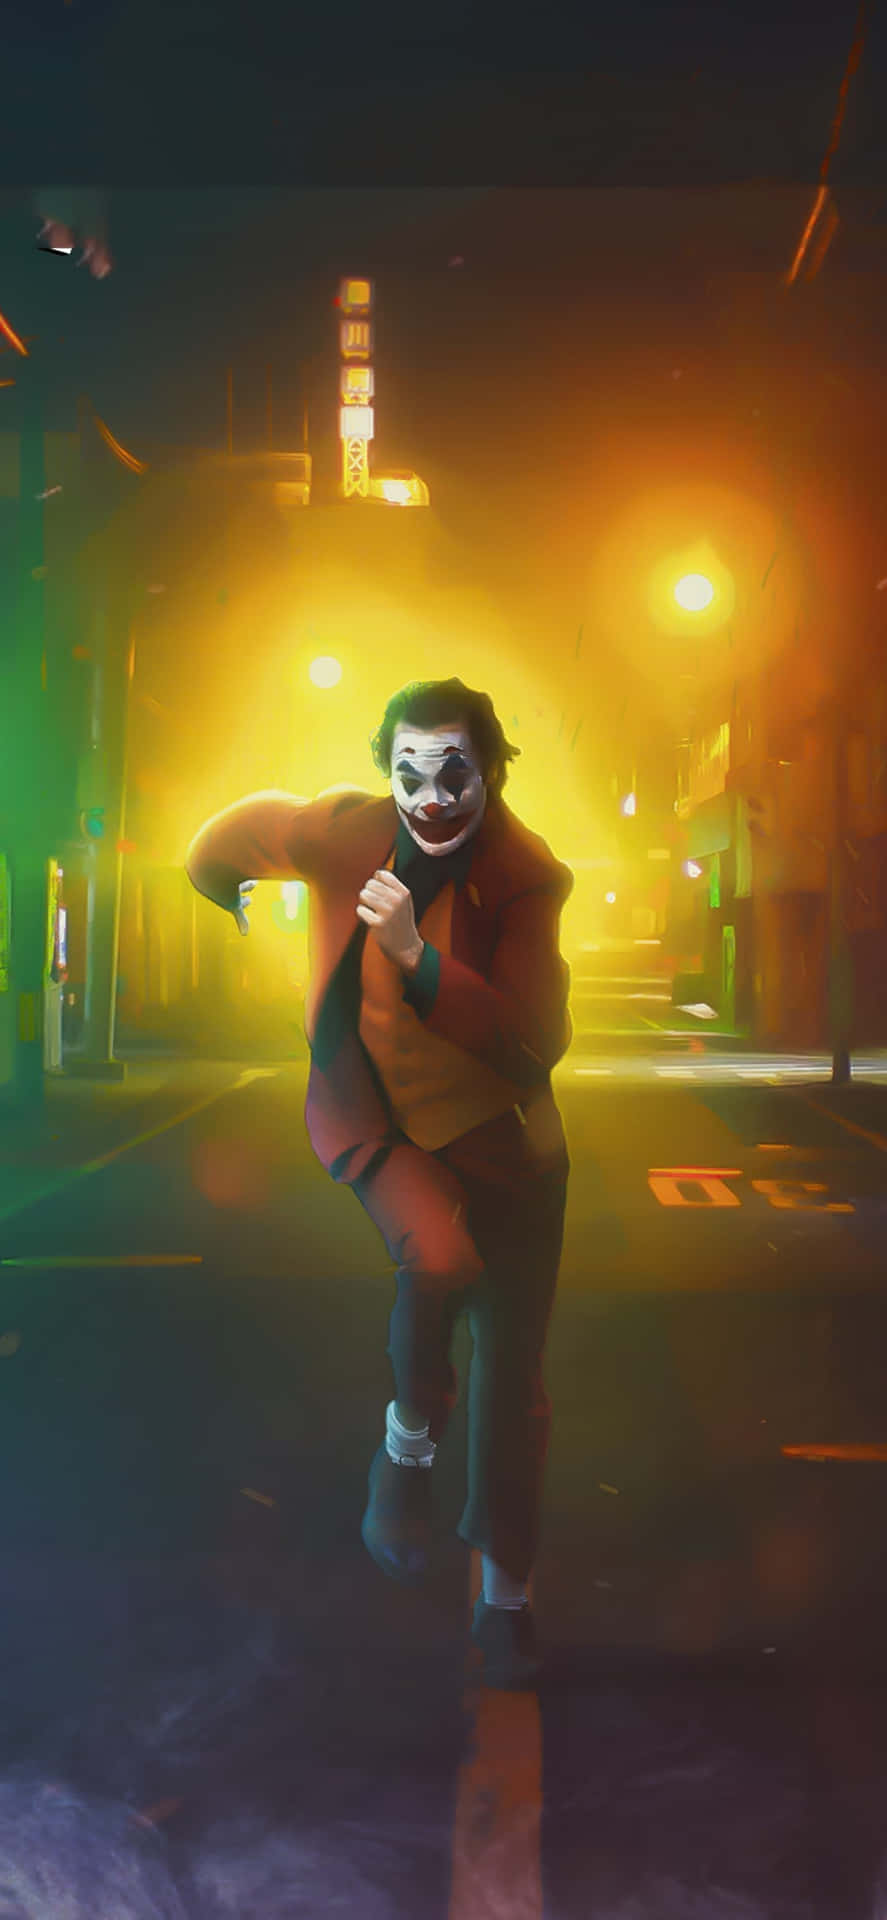 Cool Joker Running Down Street Wallpaper